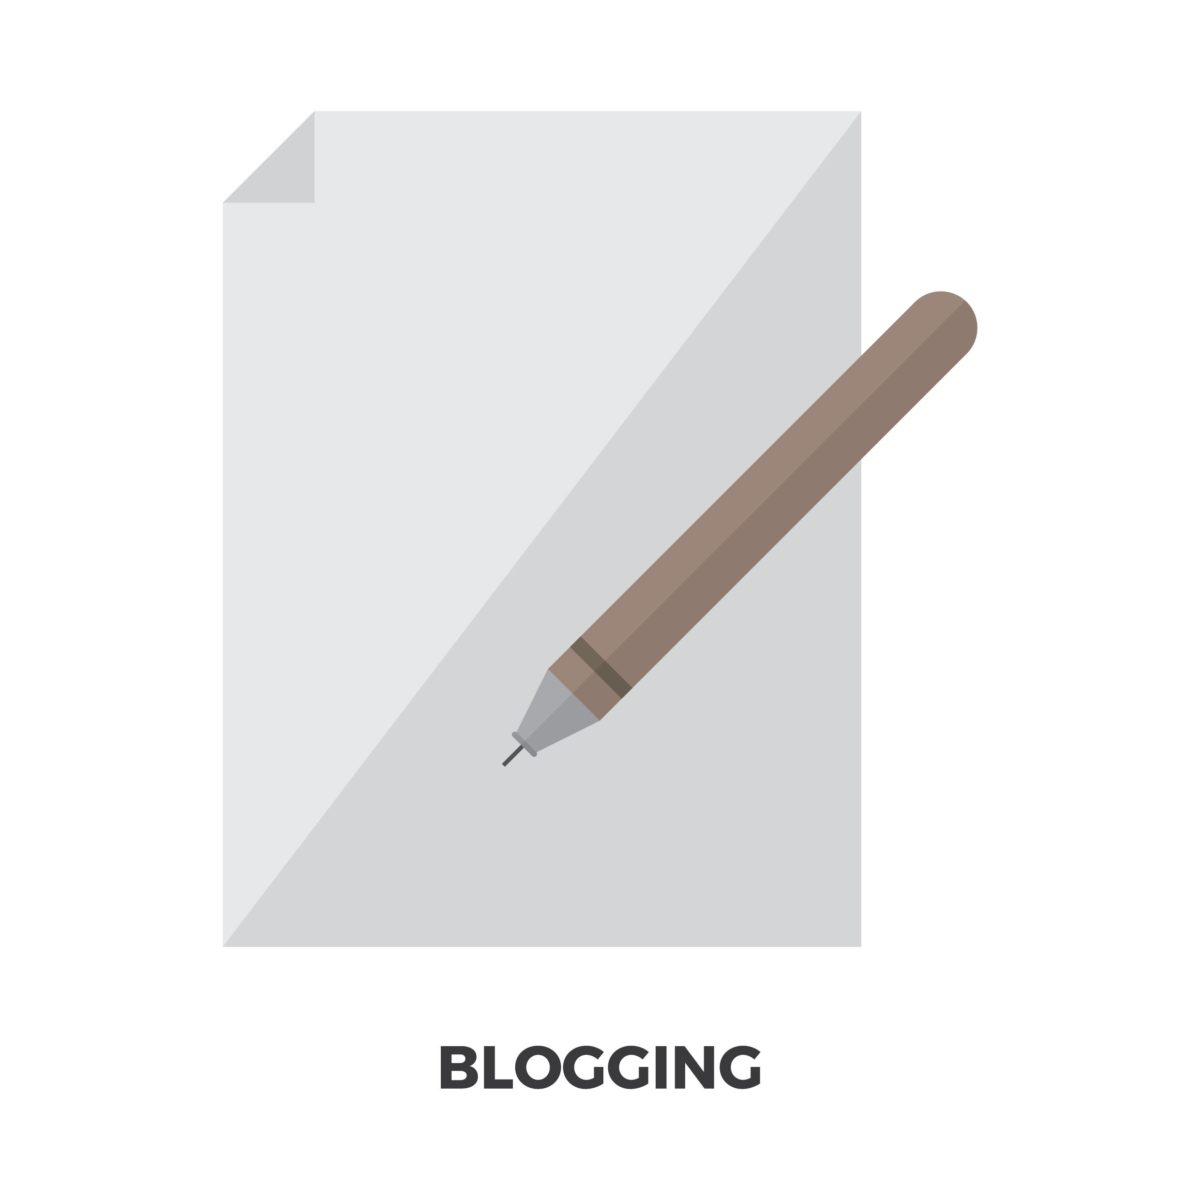 Schrijf je eigen blog met IPower: de ultieme oplossing voor blogs schrijven!